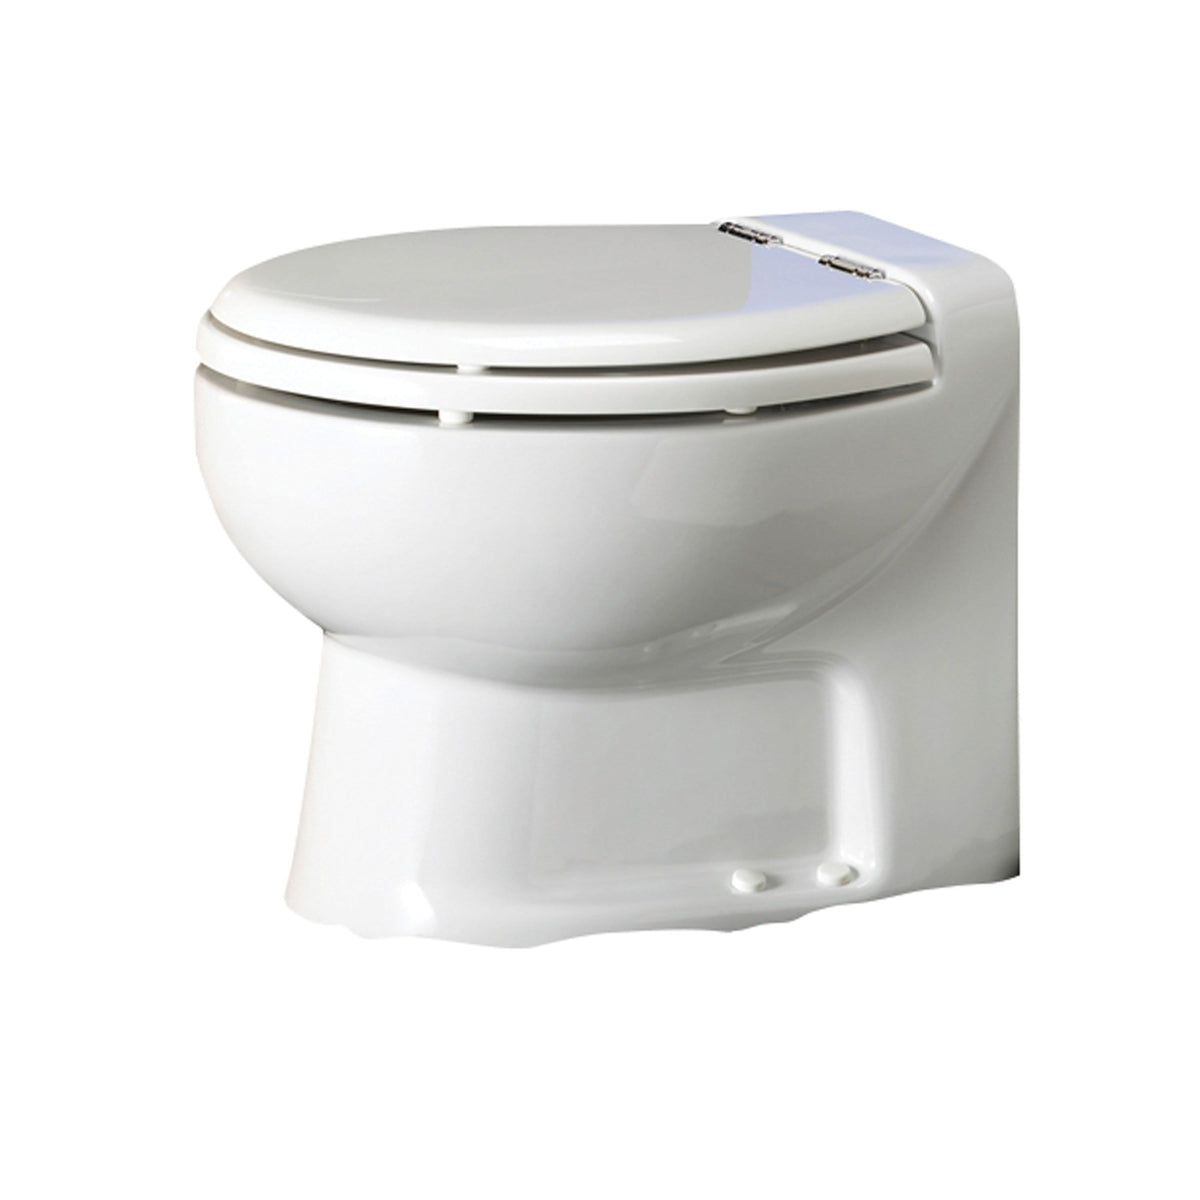 Thetford Not Qualified for Free Shipping Thetford Tecma Silence 1 Mode 24v RV Toilet White #38036